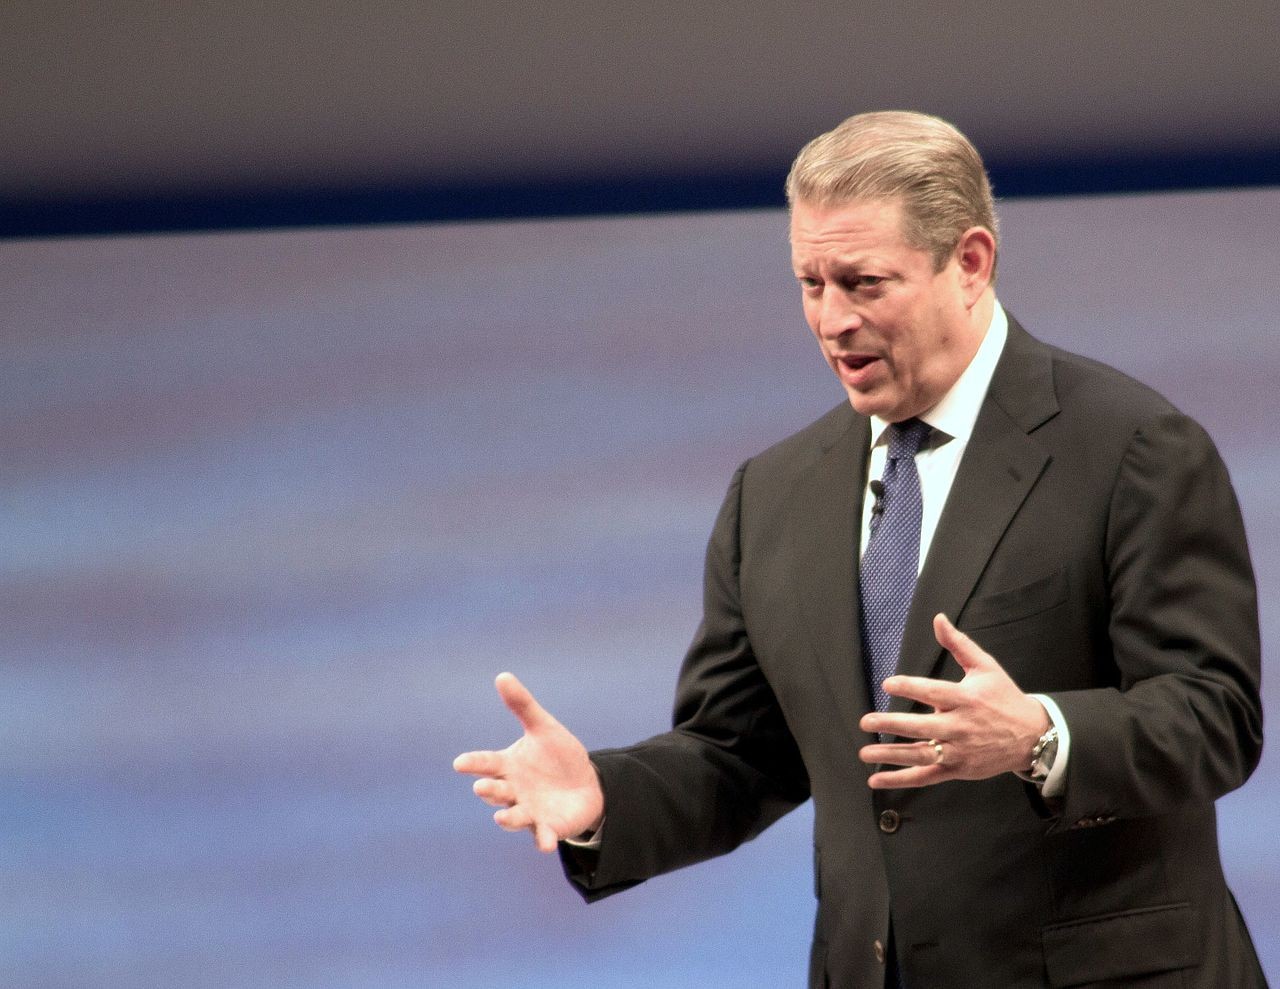 A Gore, ex-presidente dos EUA, participou de debate na Campus Party 2020 (Foto: Tom Raftery/Wikimedia Commons)